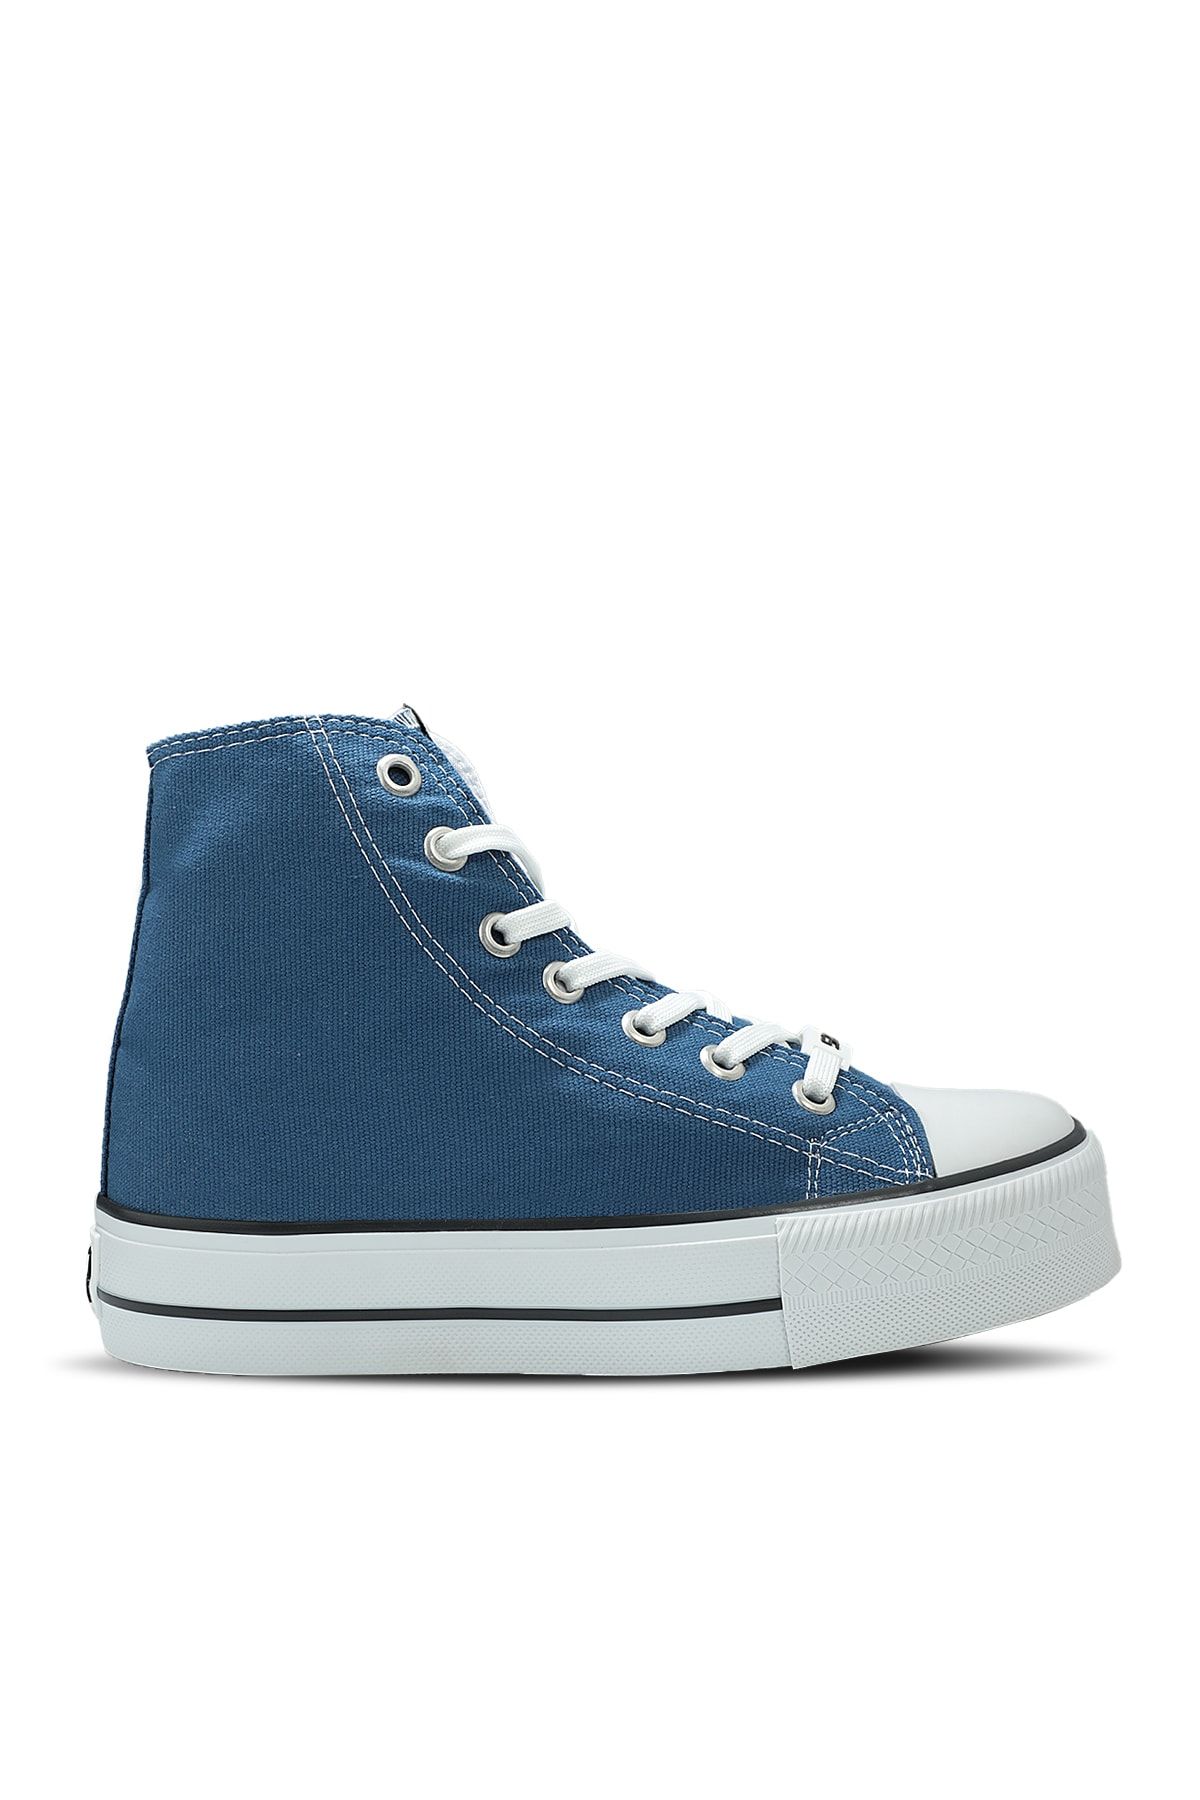 Slazenger Super Hıgh Sneaker Kadın Ayakkabı Mavi